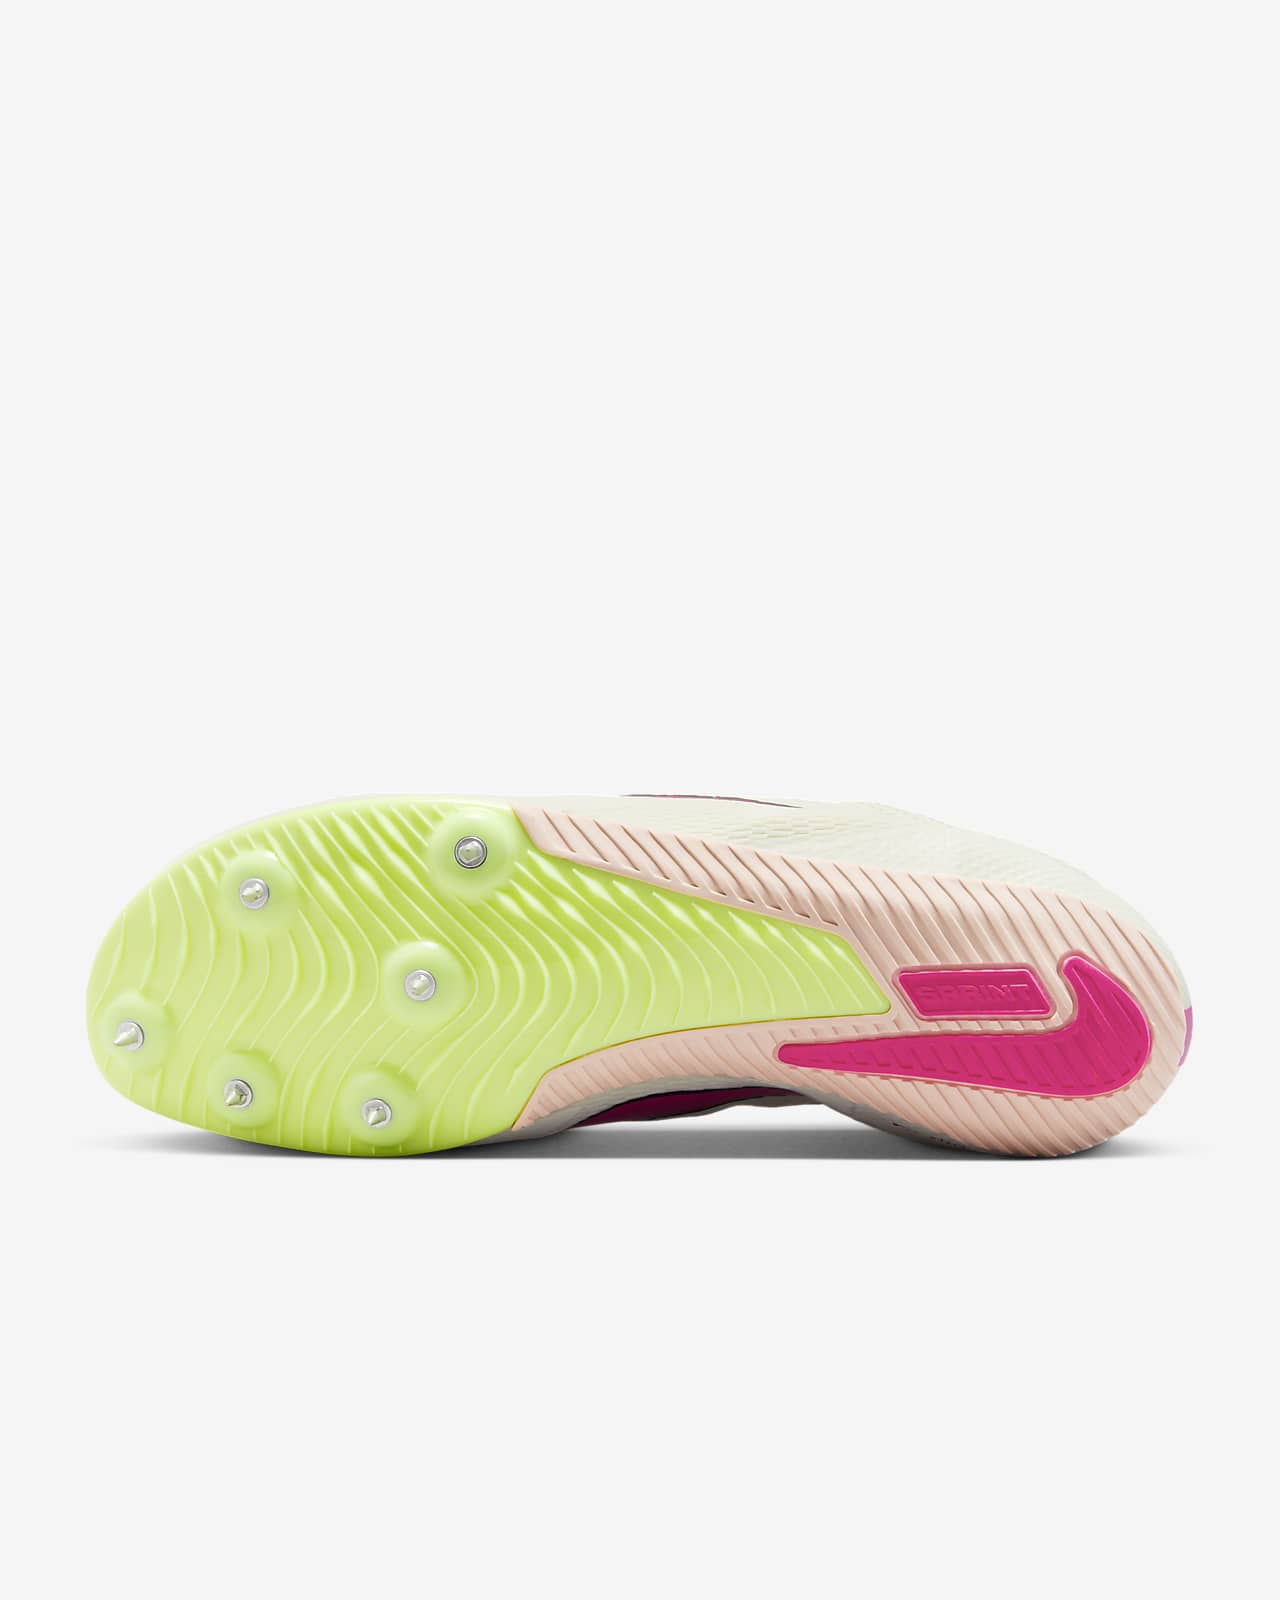 Atletismo Zapatillas con tacos y clavos. Nike ES